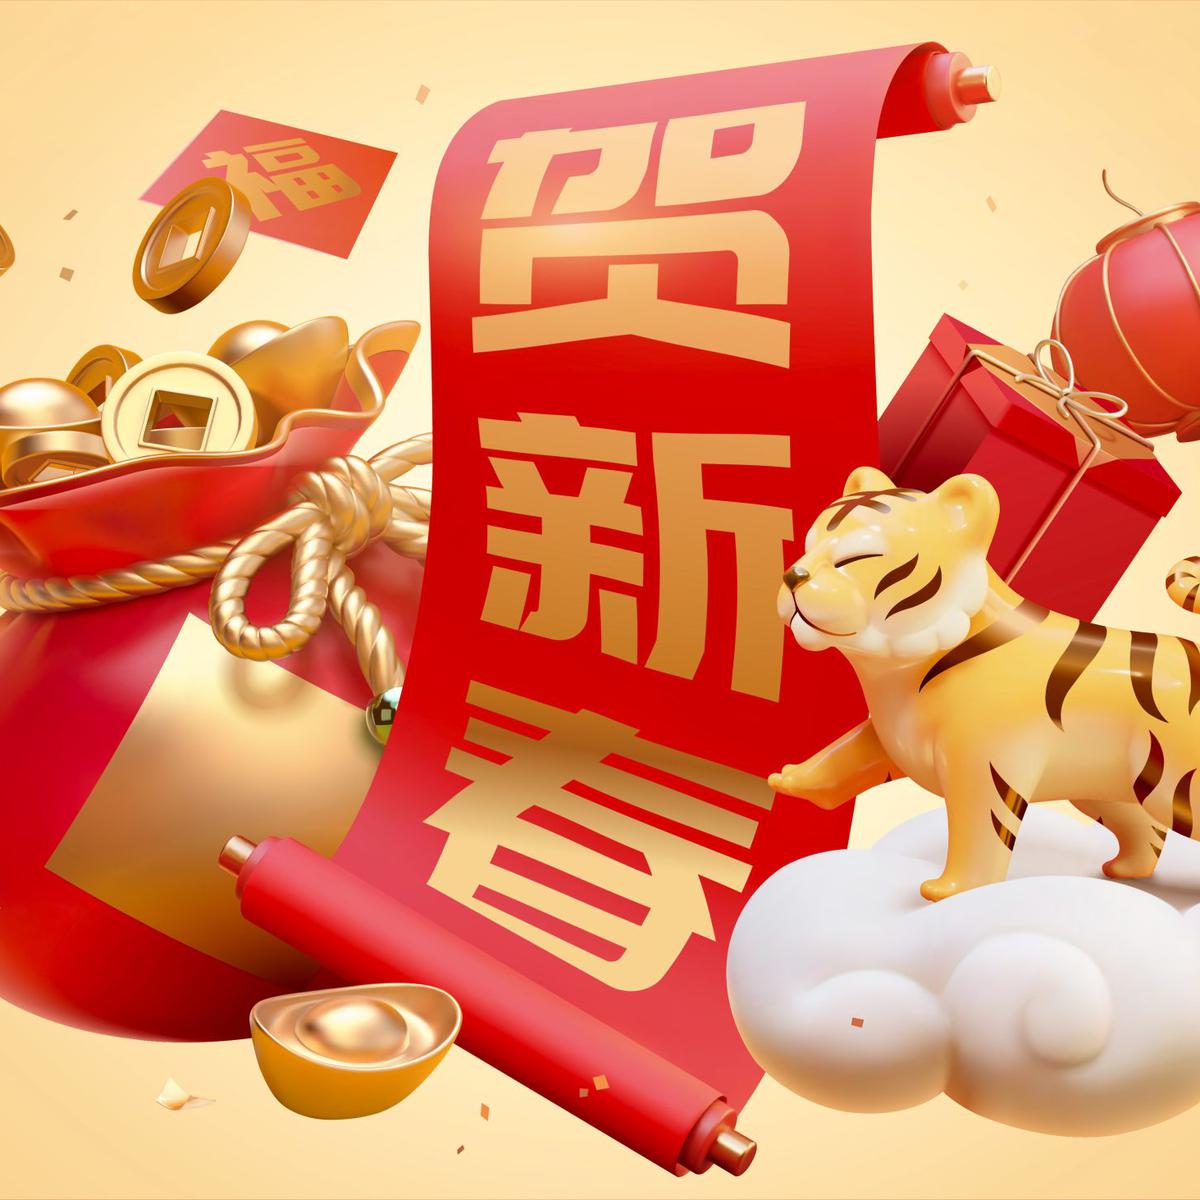 Año Nuevo Chino 2022: fechas, símbolos y animales zodiacales - La Opinión